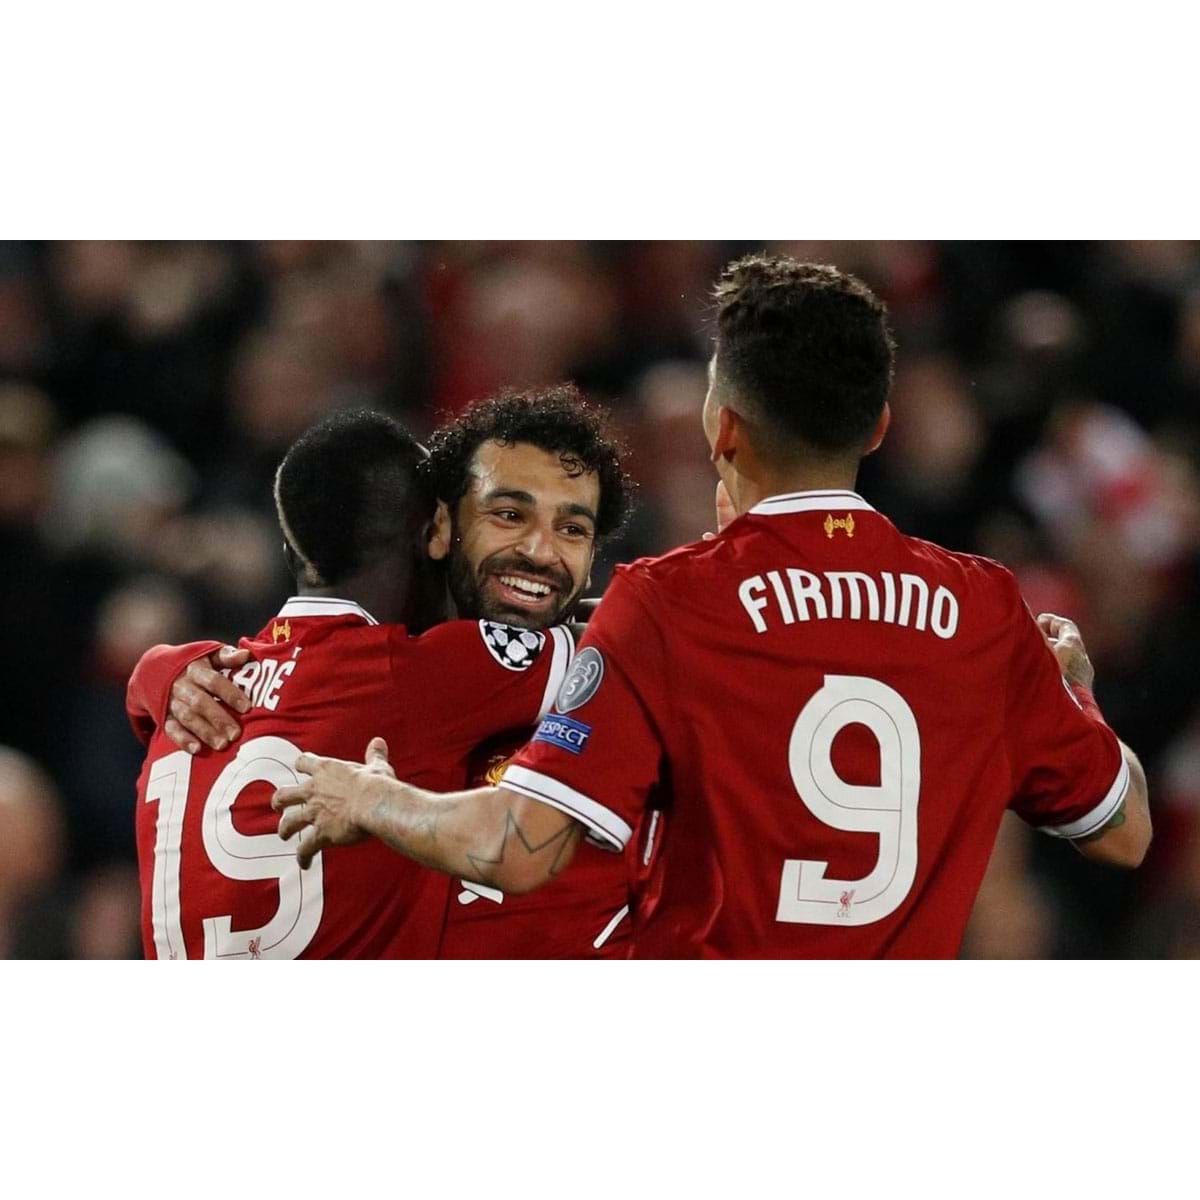 Em campo era ótimo, fora dele nem tanto: Firmino detalha relação com Salah  e Mané no Liverpool